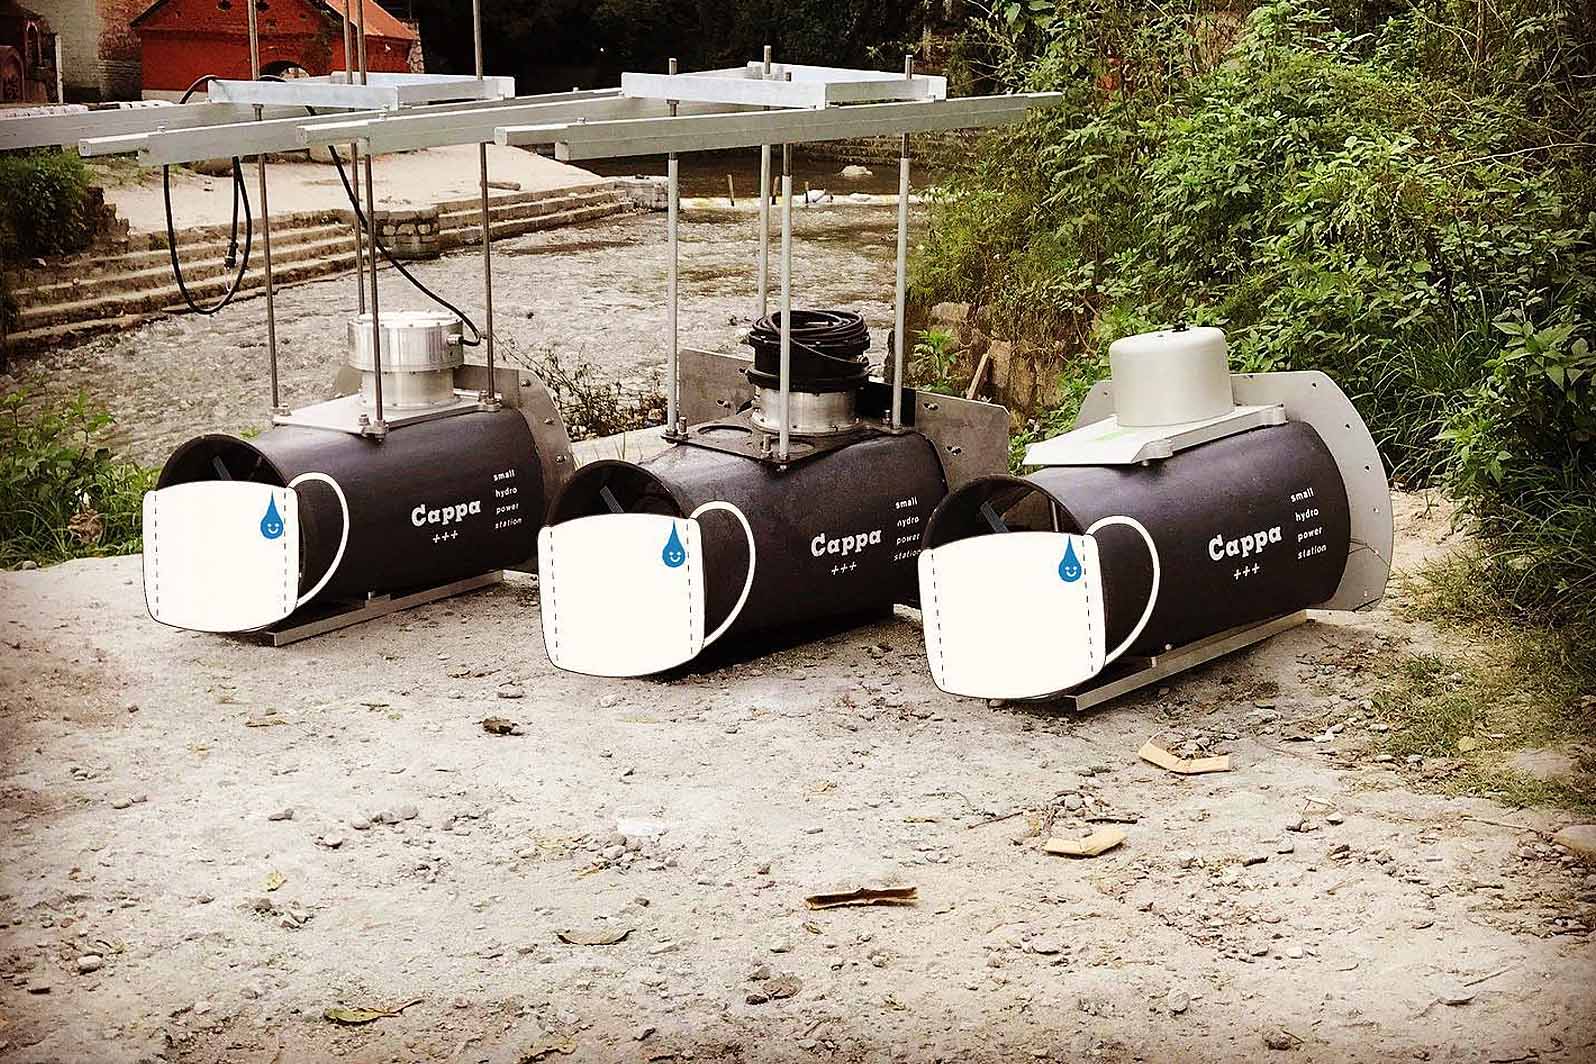 Trois hydroliennes Cappa sur les six générateurs installés sur quatre sites au Népal dans le cadre d'un projet pilote.